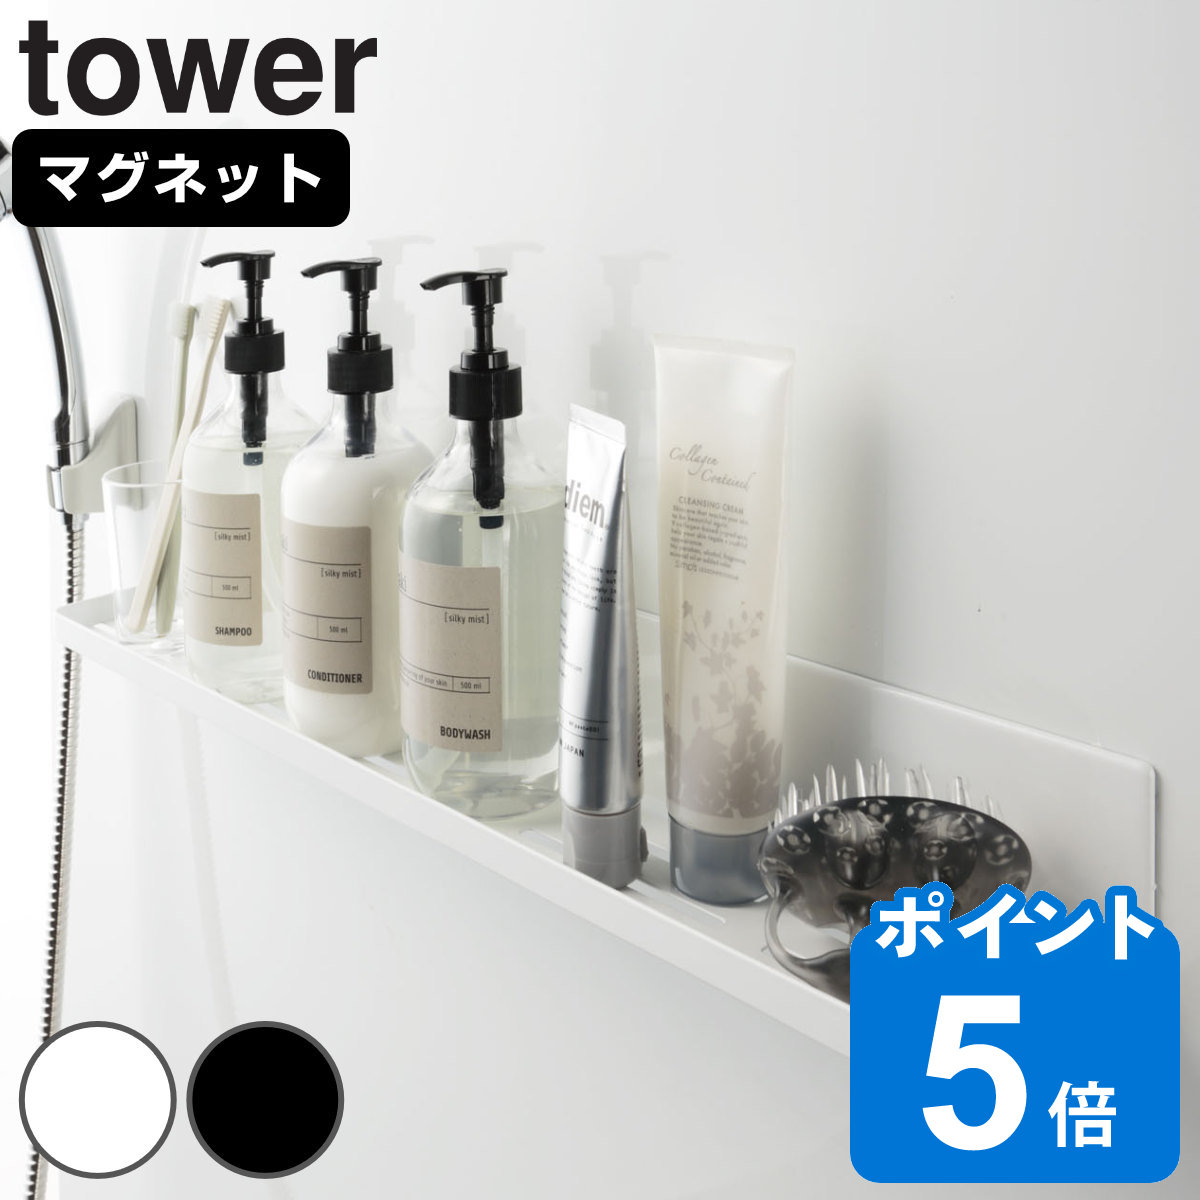 山崎実業 tower マグネットバスルームラック タワー ロング